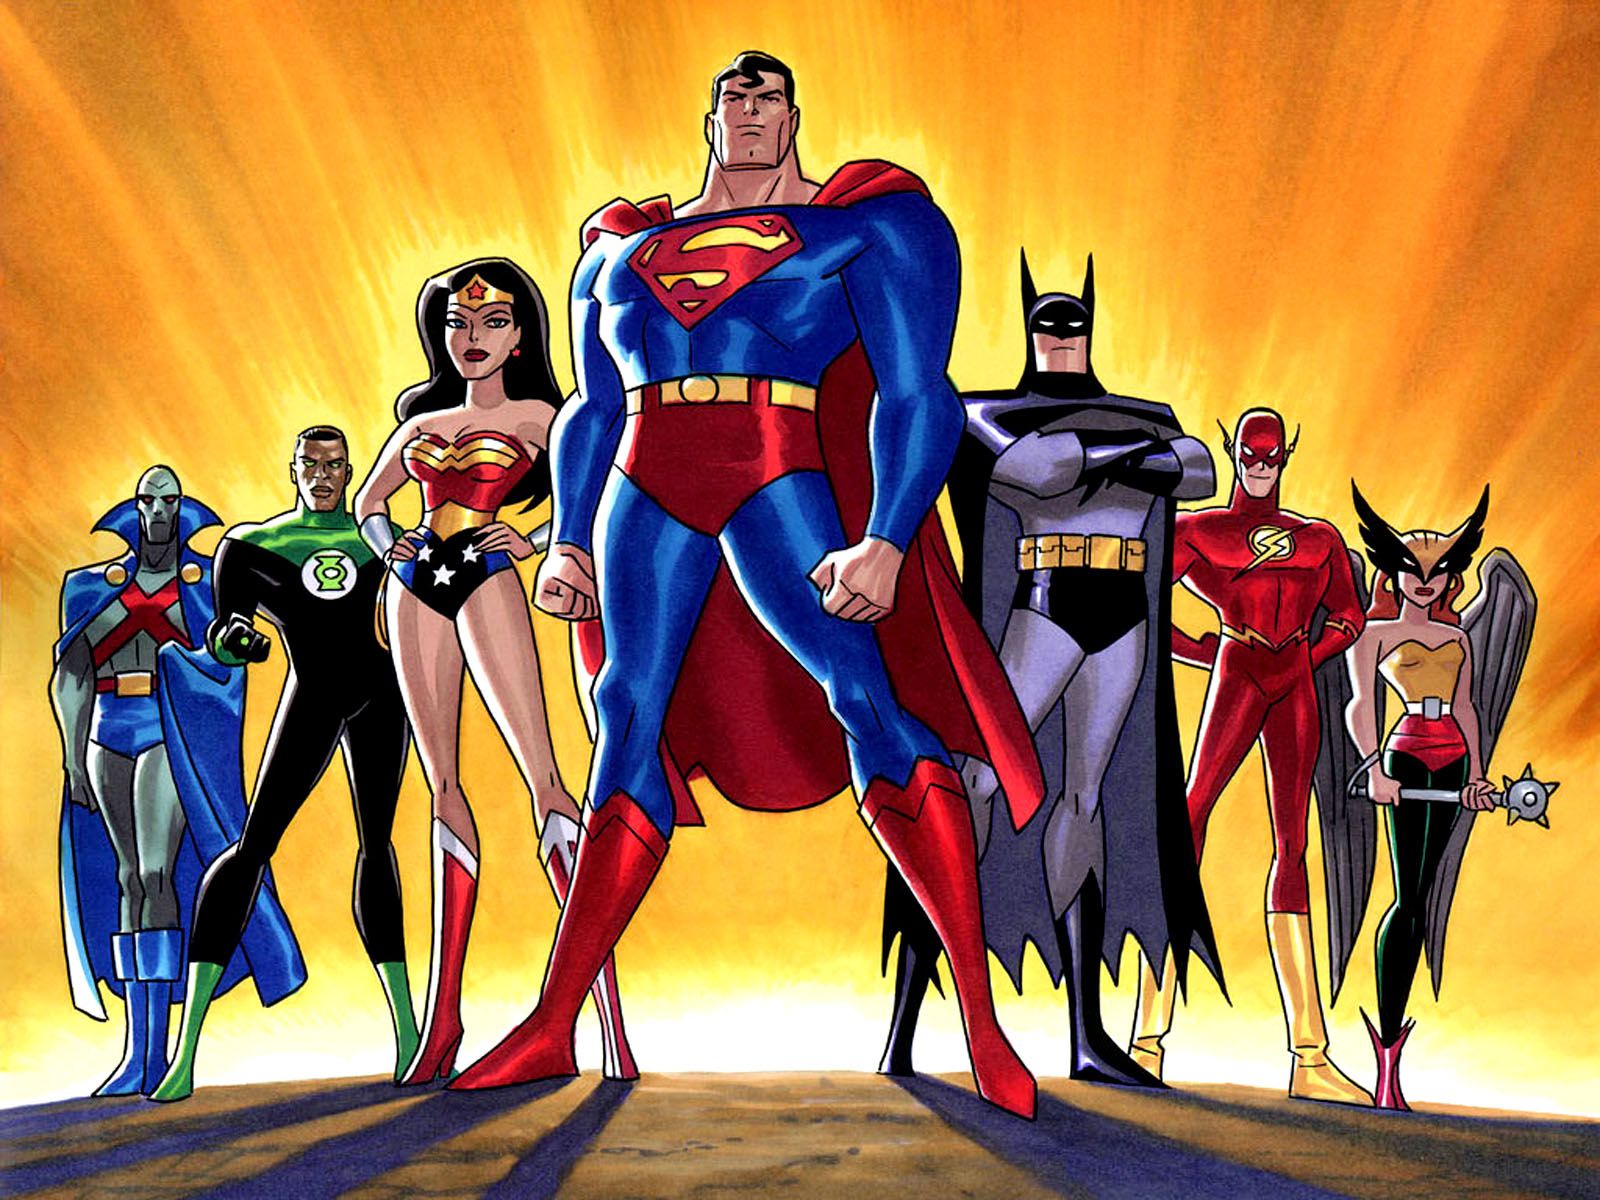 fond d'écran de super héros de bande dessinée,super héros,personnage fictif,superman,héros,ligue de justice